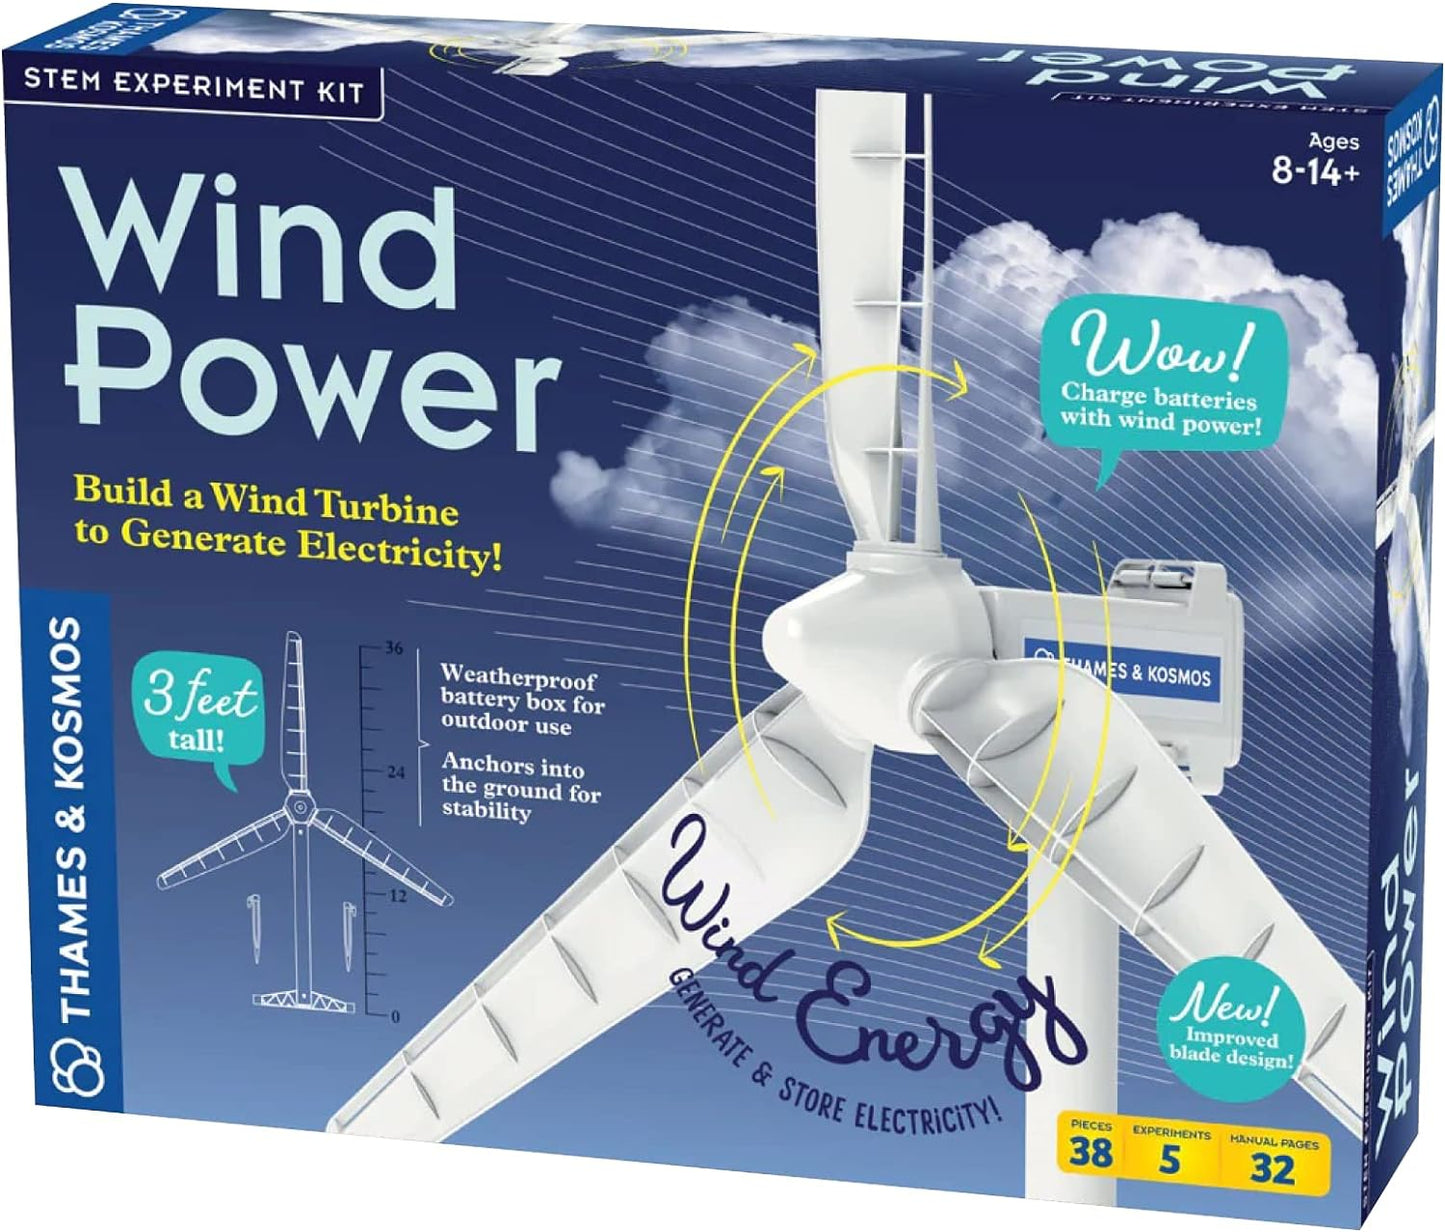 Thames & Kosmos Kit de experimento STEM Wind Power V4.0 | Construye una turbina eólica de 3 pies para generar electricidad | Aprende sobre energía renovable y alimenta un automóvil modelo pequeño | Resistente a la intemperie para uso en exteriores